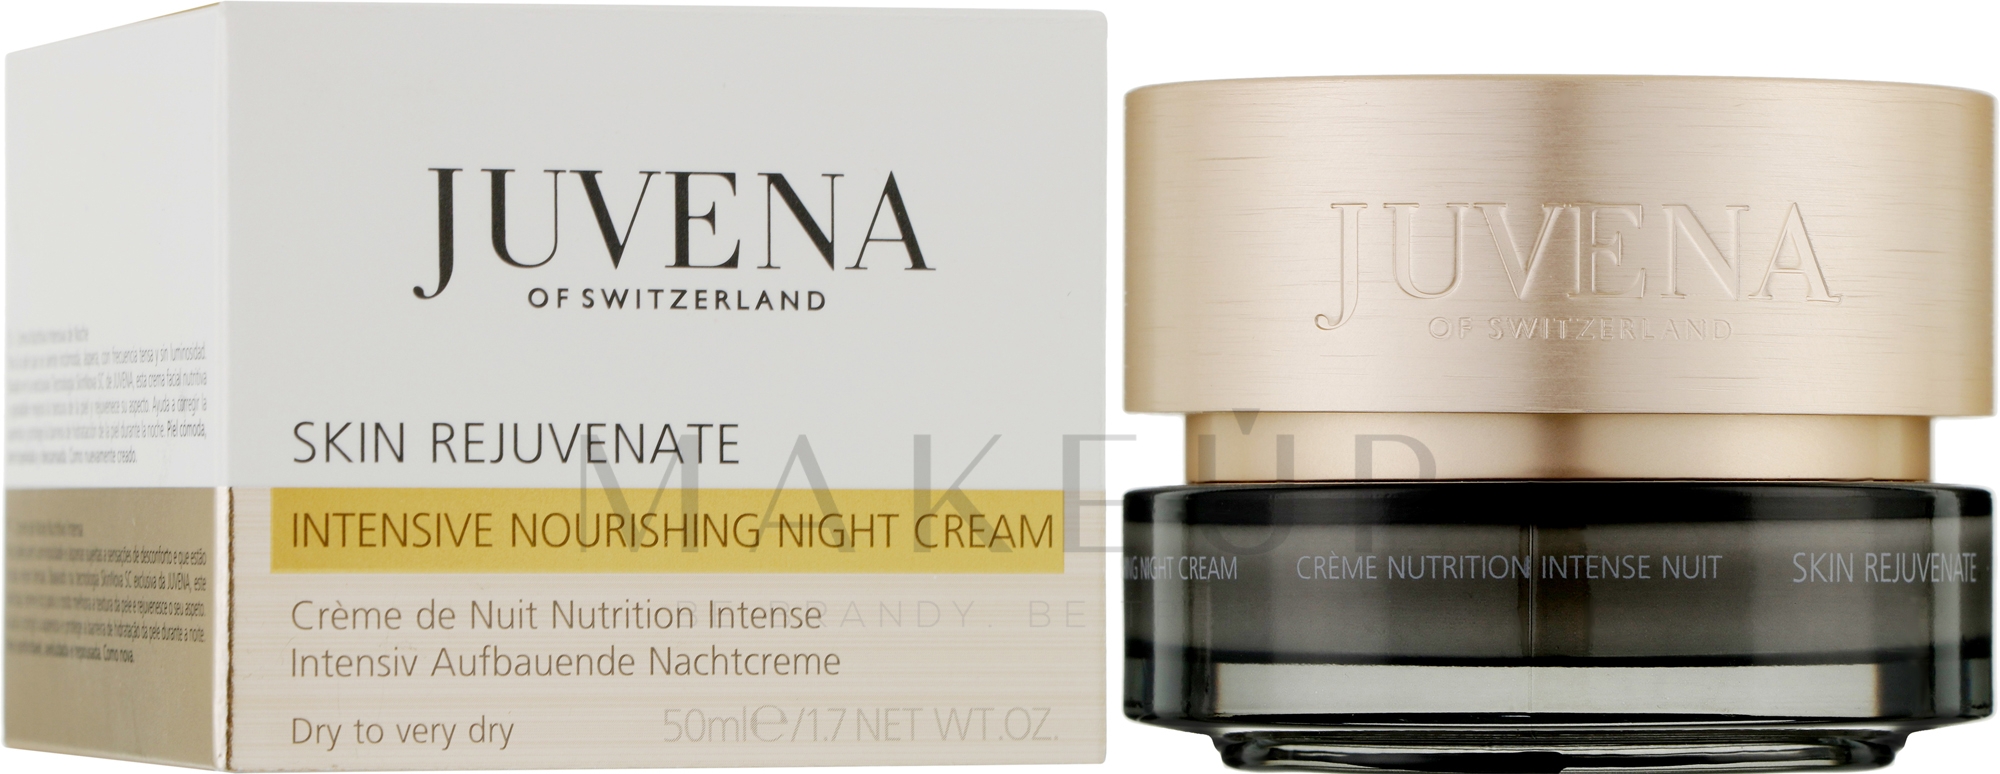 Intensiv pflegende Nachtcreme für trockene und sehr trockene Haut - Juvena Skin Rejuvenate Nourishing Night Cream — Bild 50 ml